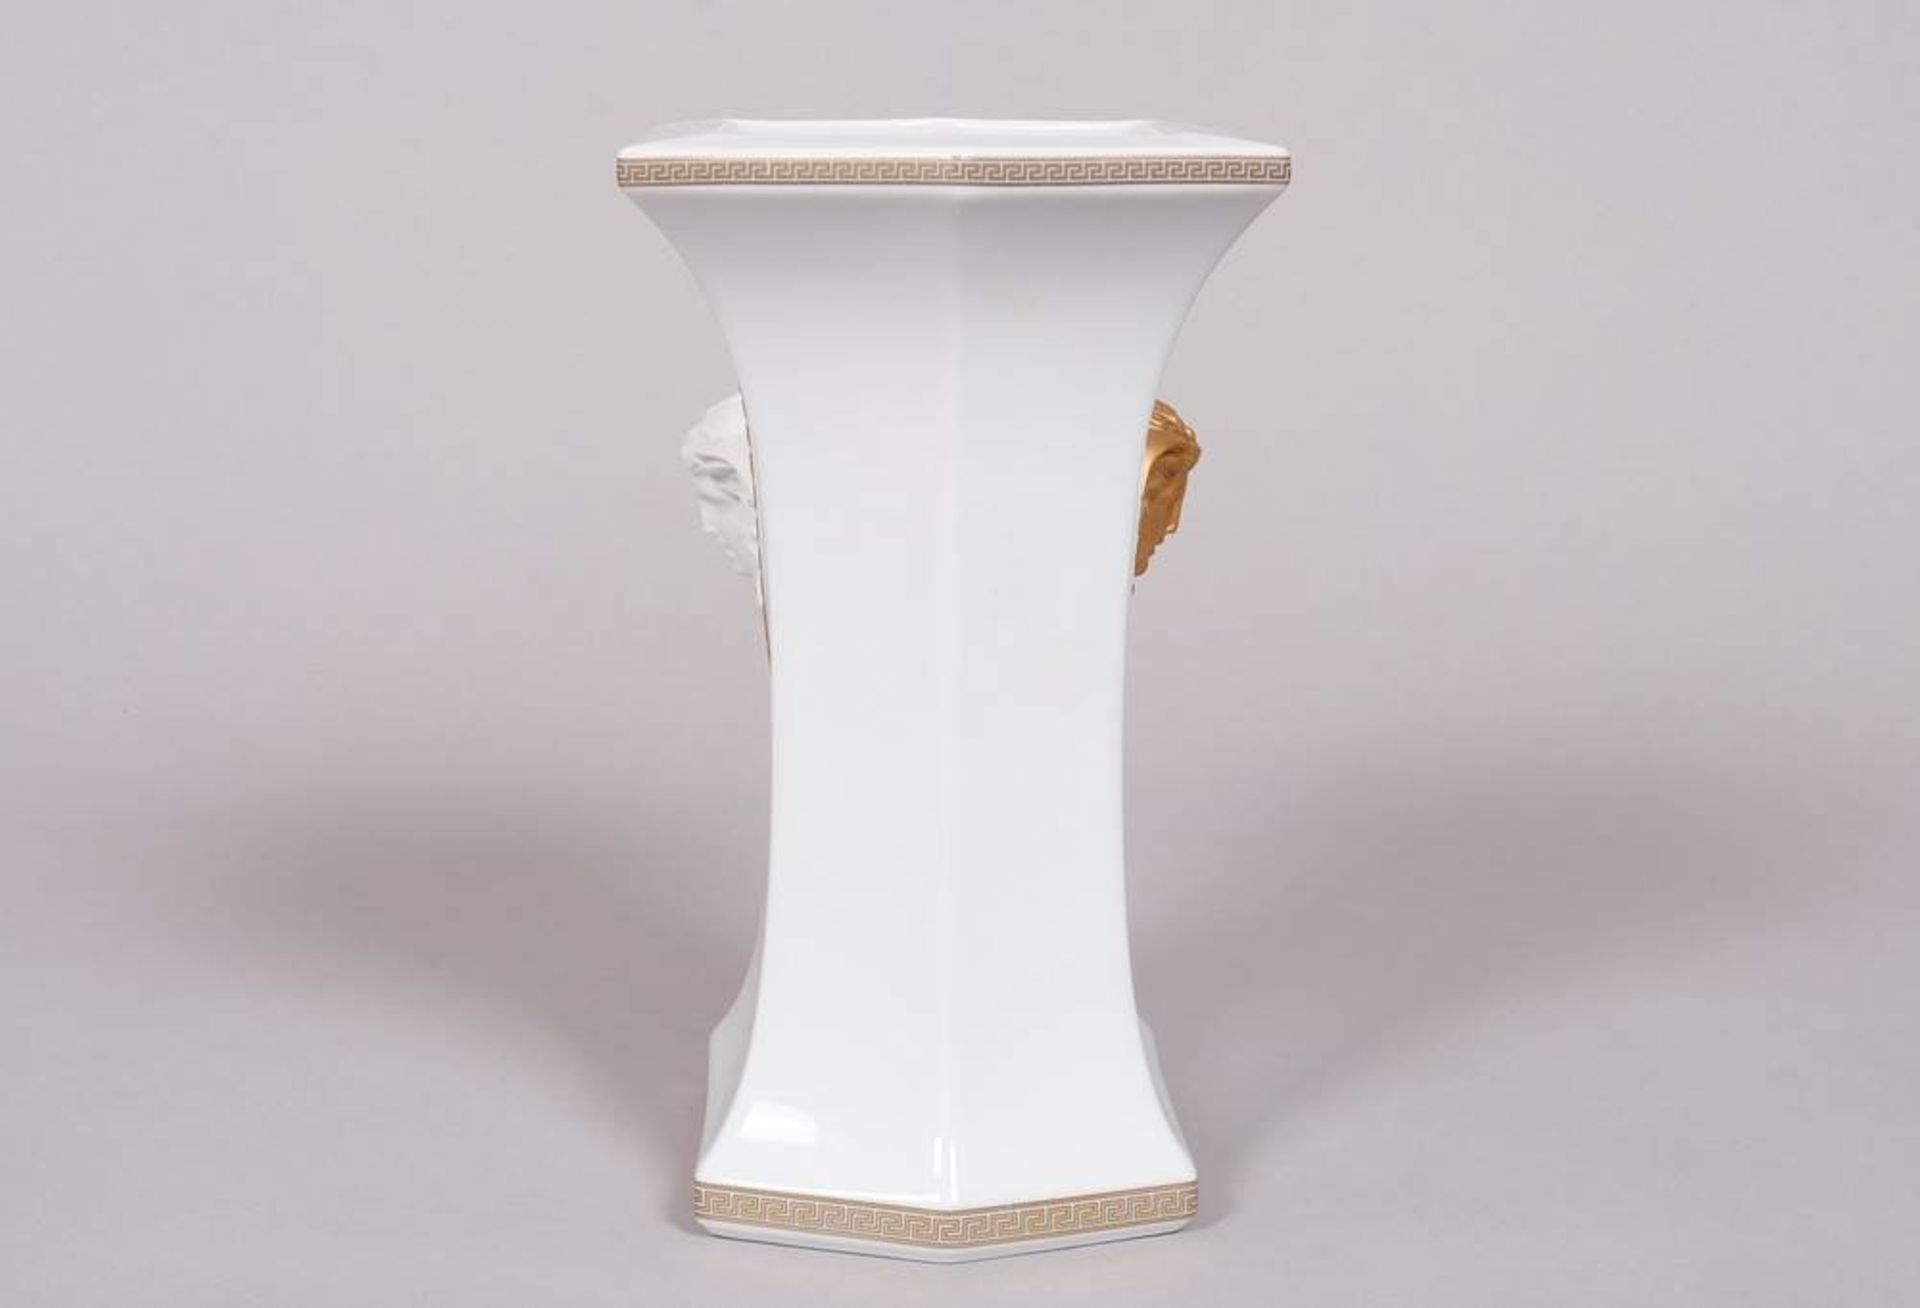 Große Vase, Rosenthal meets Versace, Dekor "Gorgona" von Gianni Versace - Bild 4 aus 6